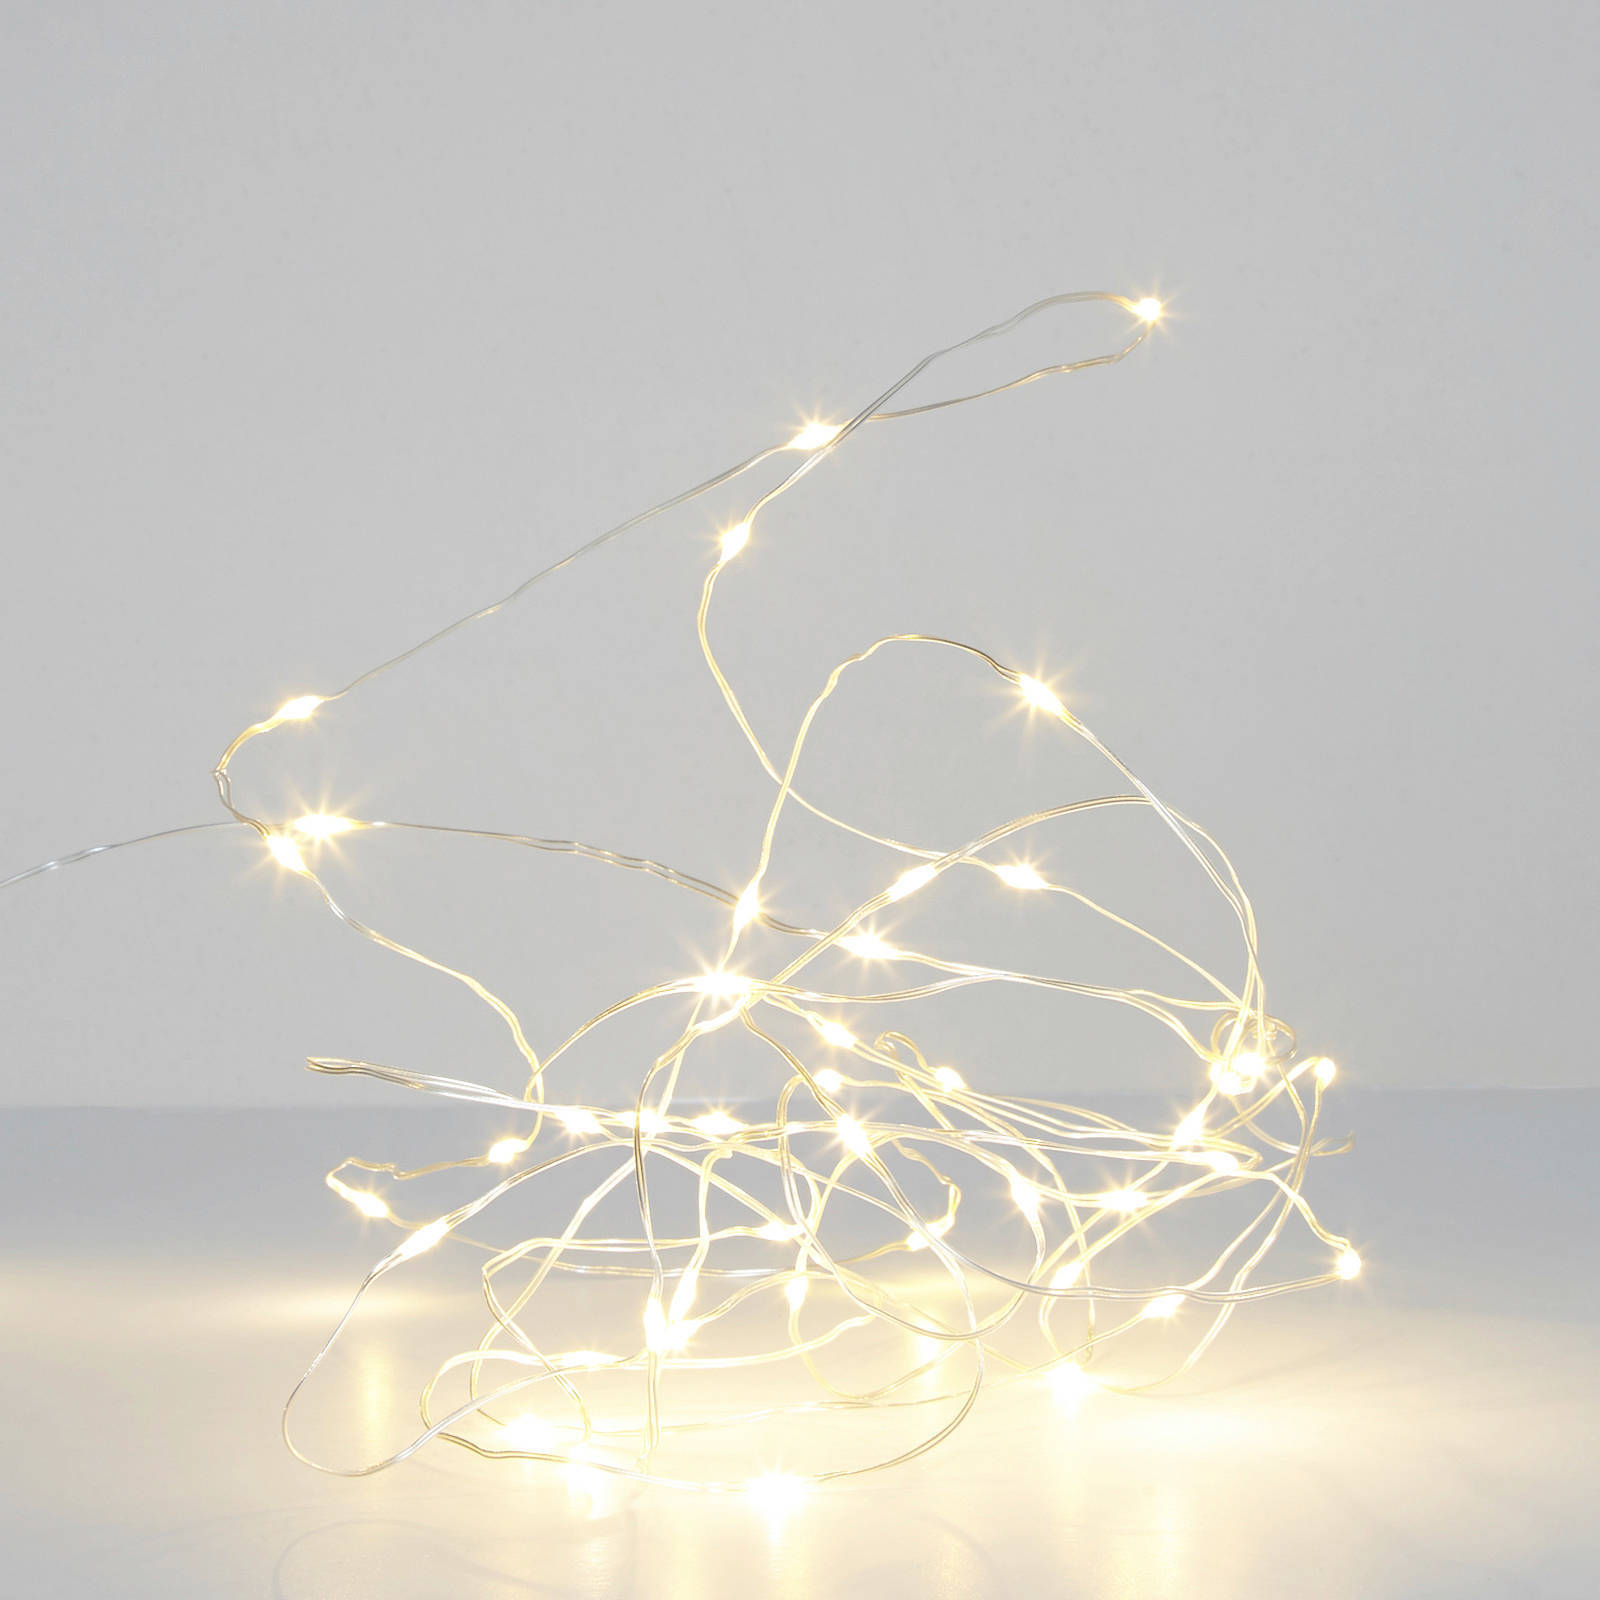 Konstsmide Micro LED lichtdraad zilver met 100 extra warm witte lampen online kopen